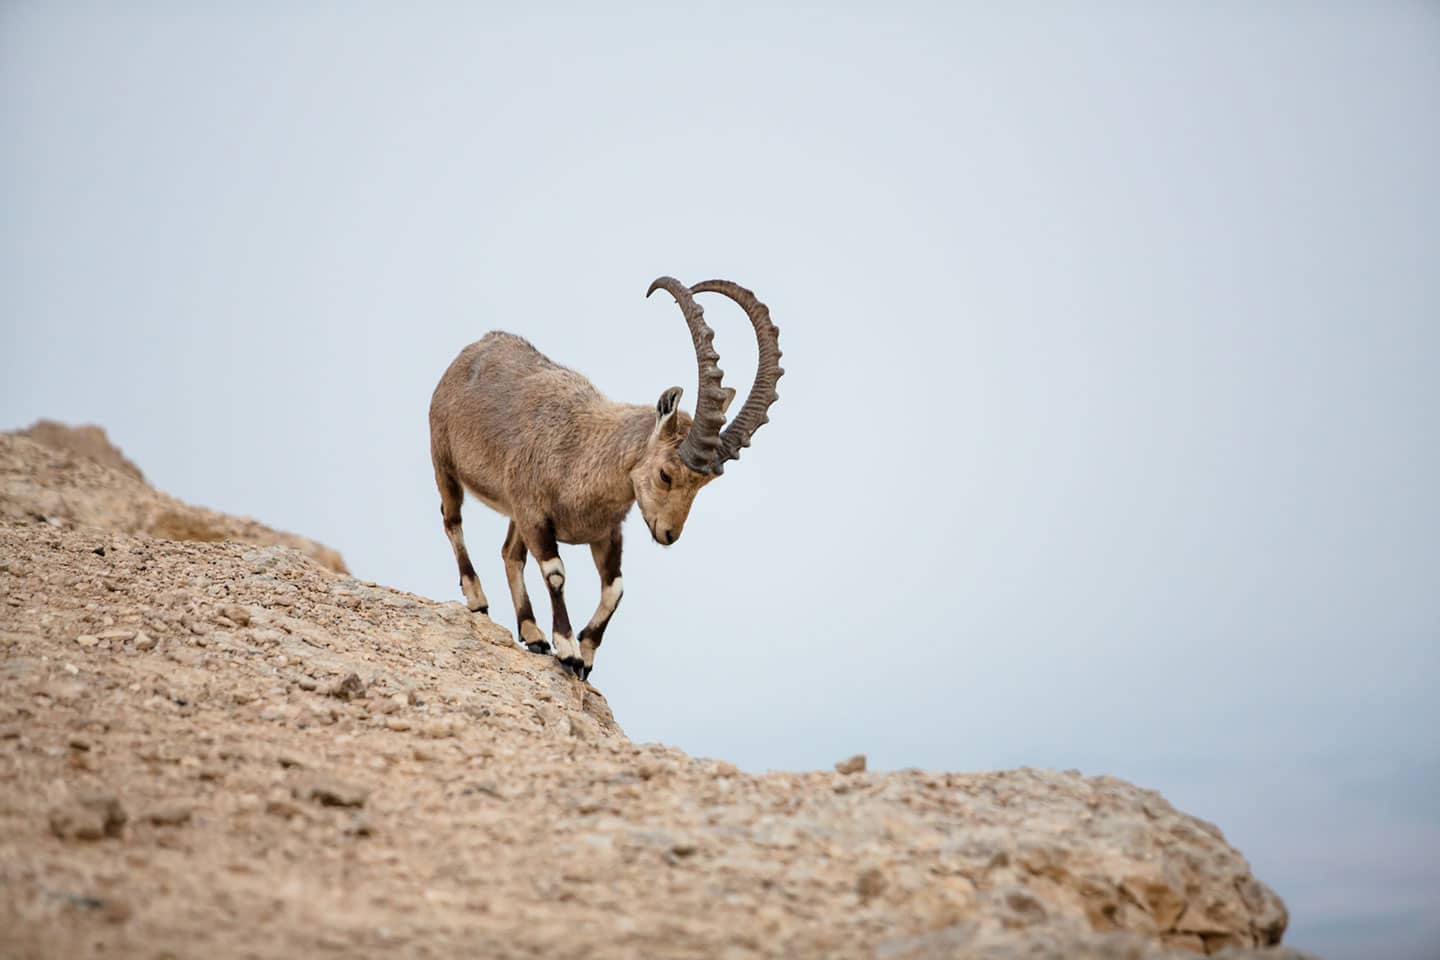 Israel wildlife in the desert